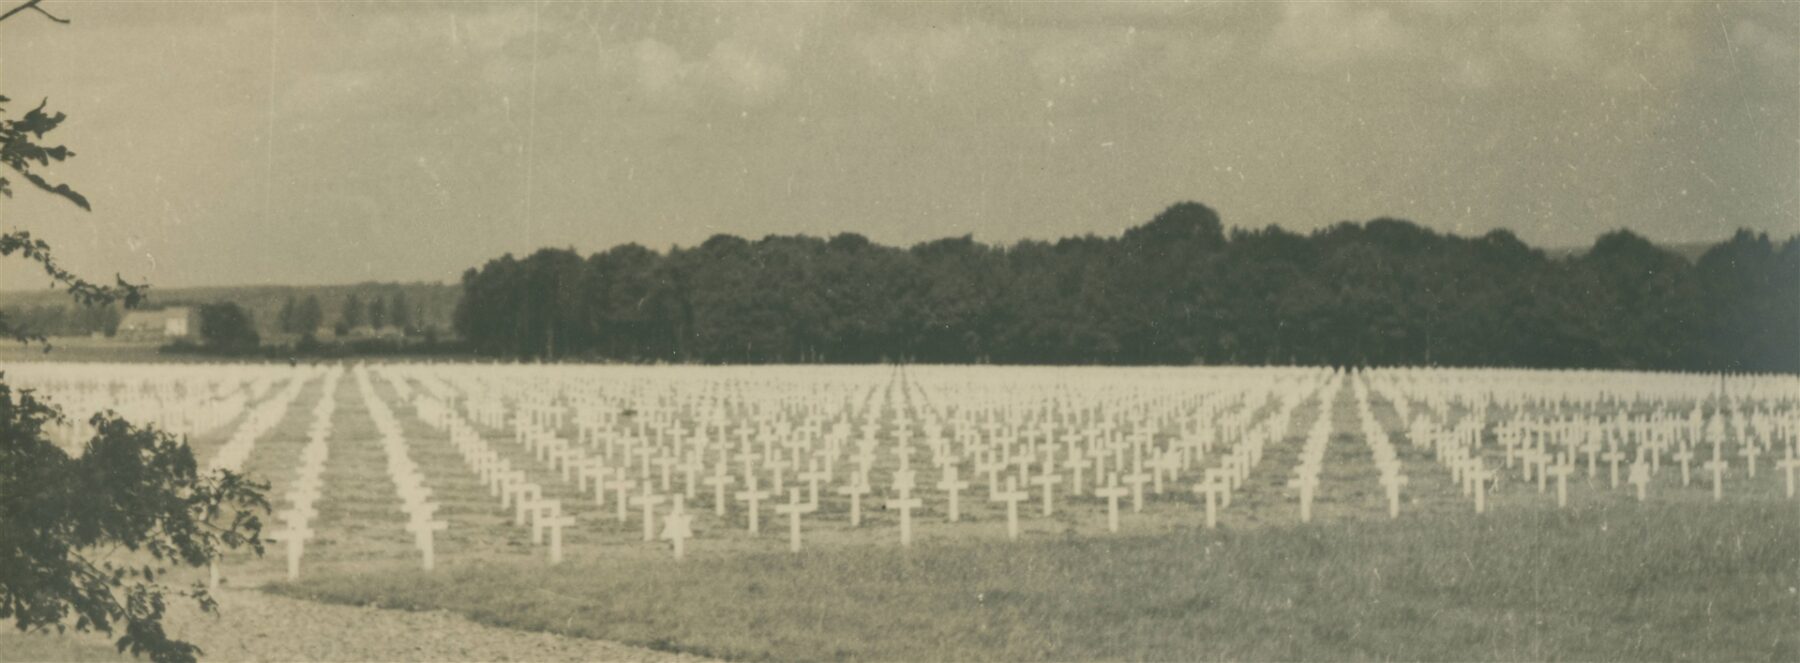 Quelle: Staatsarchiv Eupen ; Der amerikanische Soldatenfriedhof in Henri-Chapelle